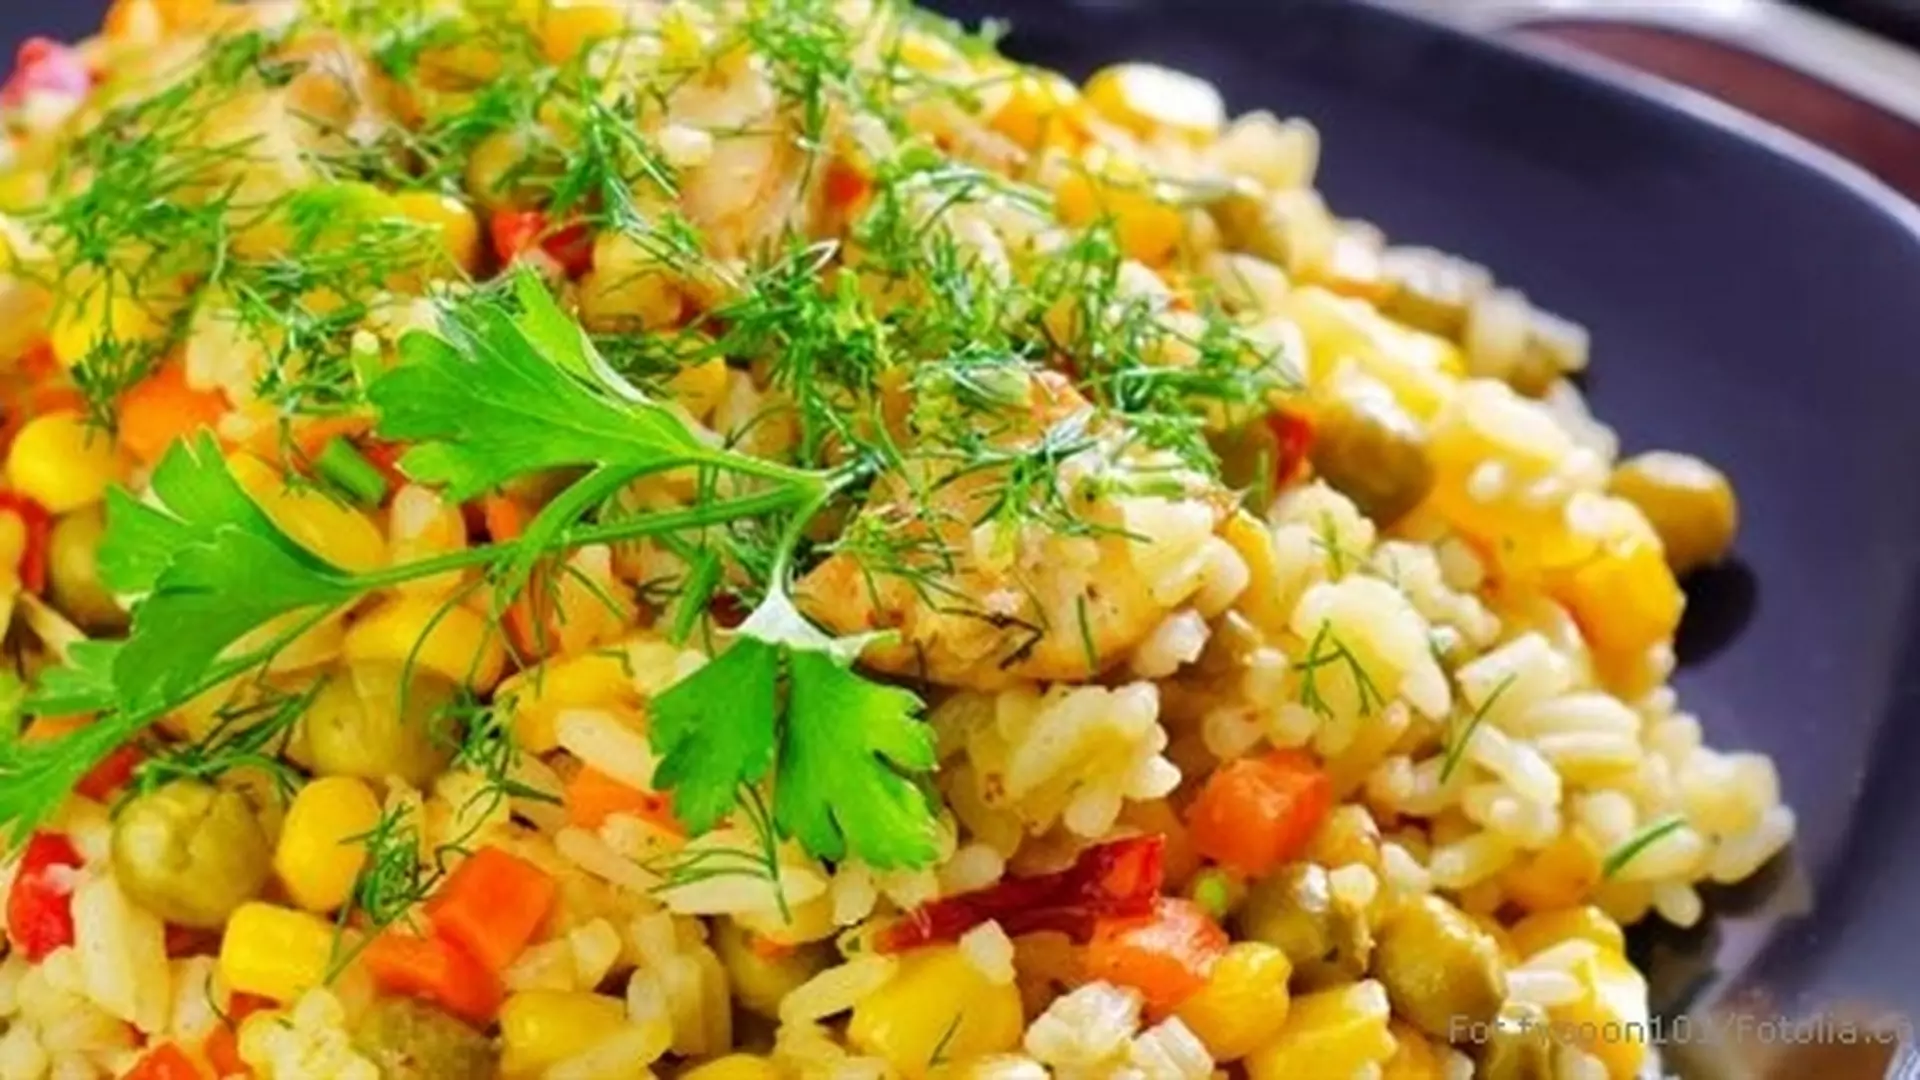 Ryż smażony z warzywami - prosty i smaczny posiłek